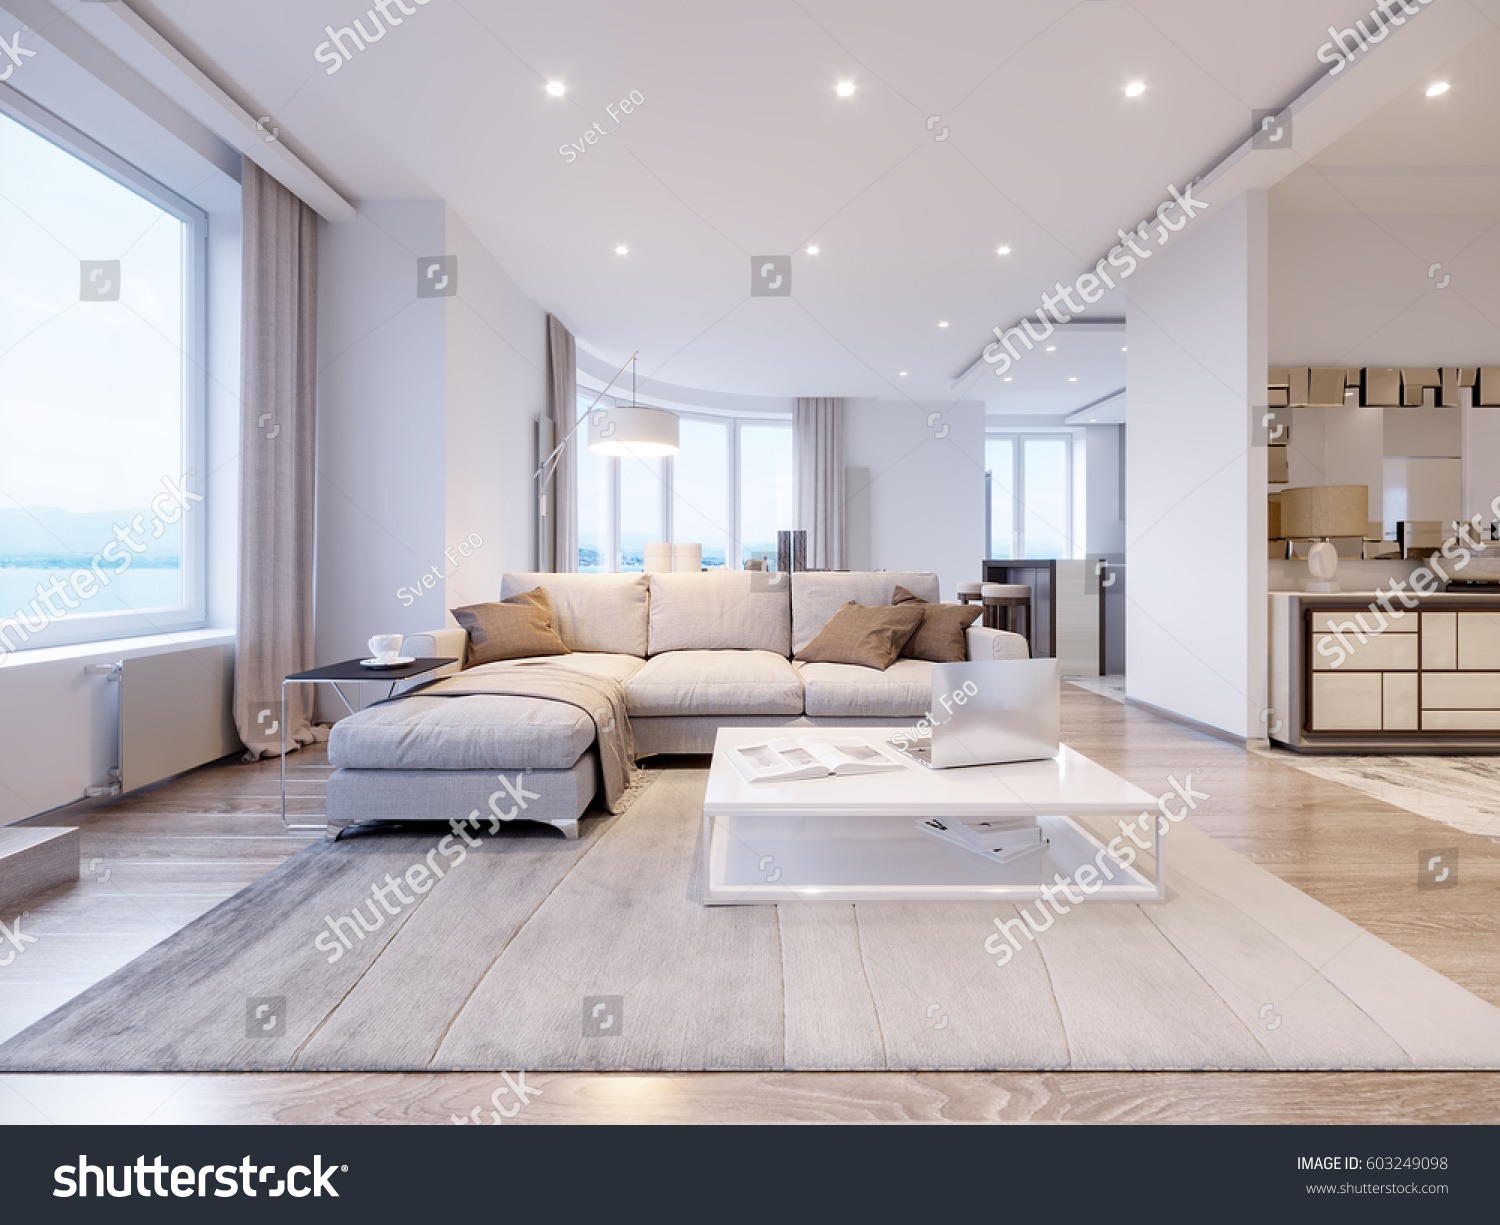 Modern White Gray Living Room Interior Stock Illustration